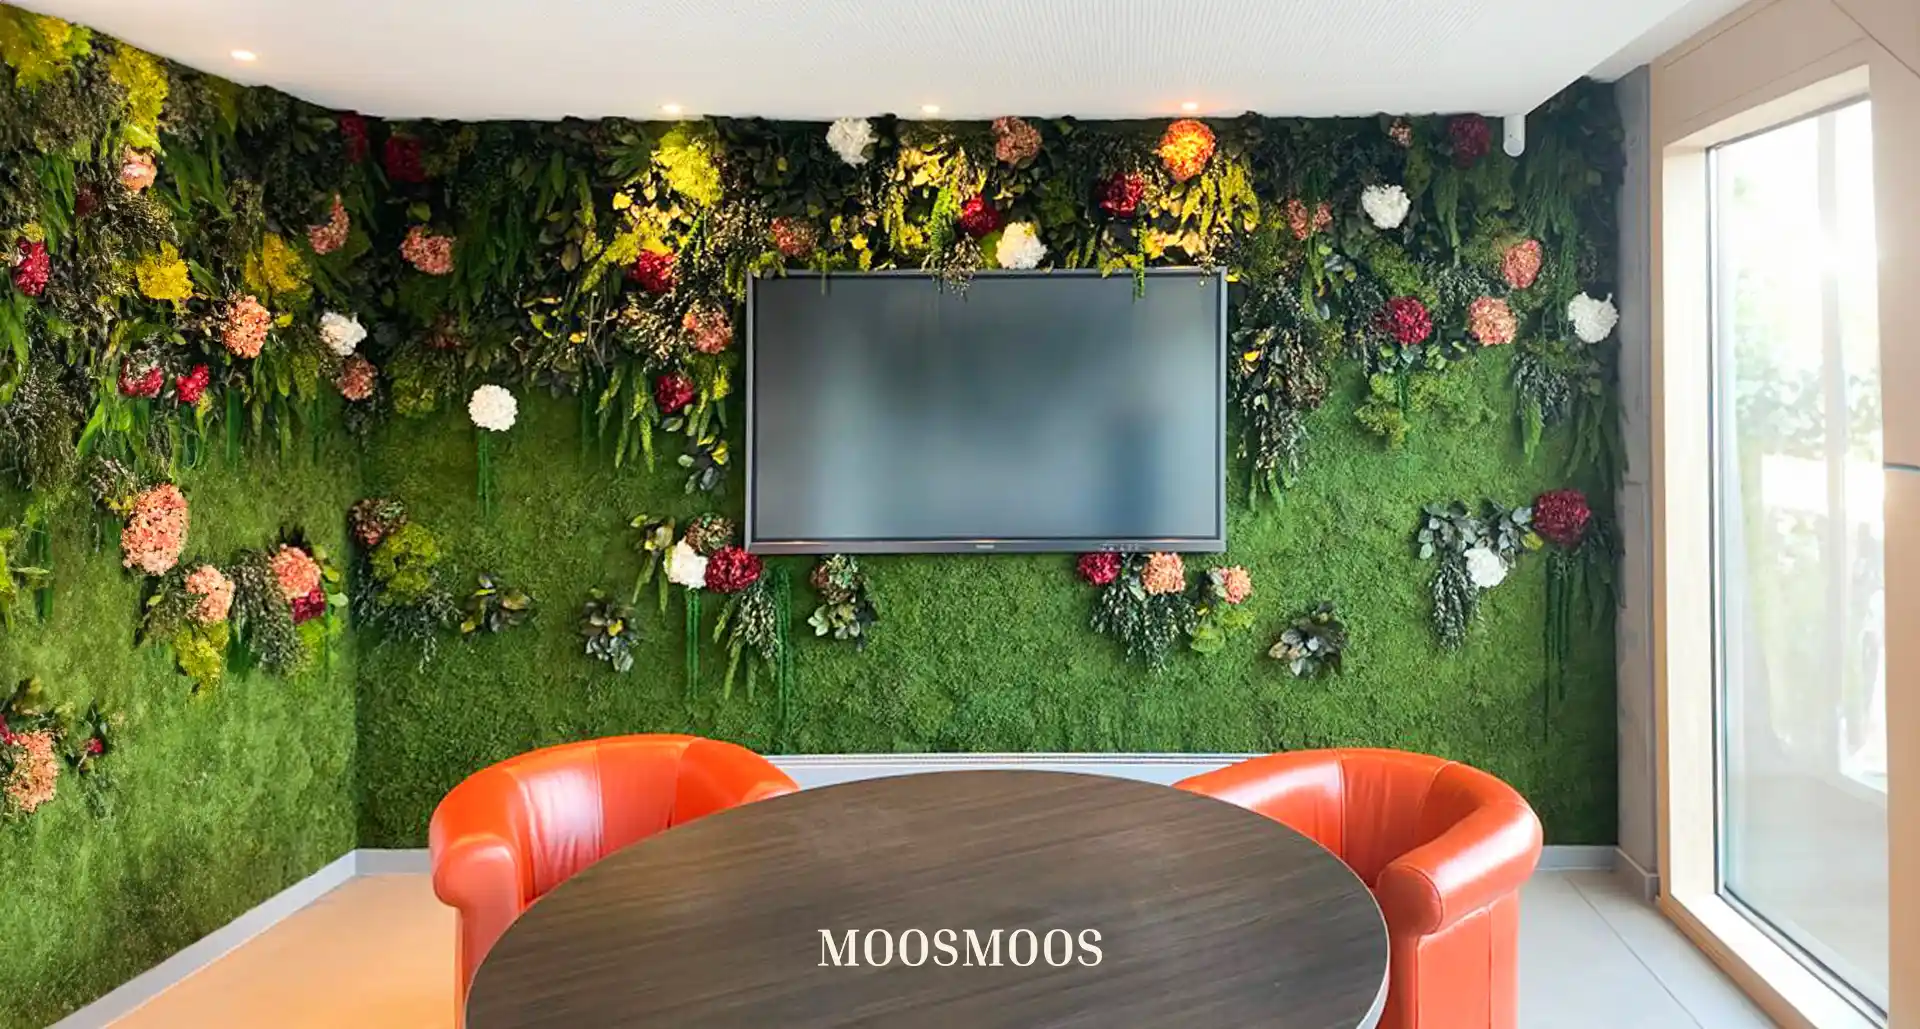 MOOSMOOS Blumenwand / Flowerwall mit echten Blumen, Pflanzen und Moosen